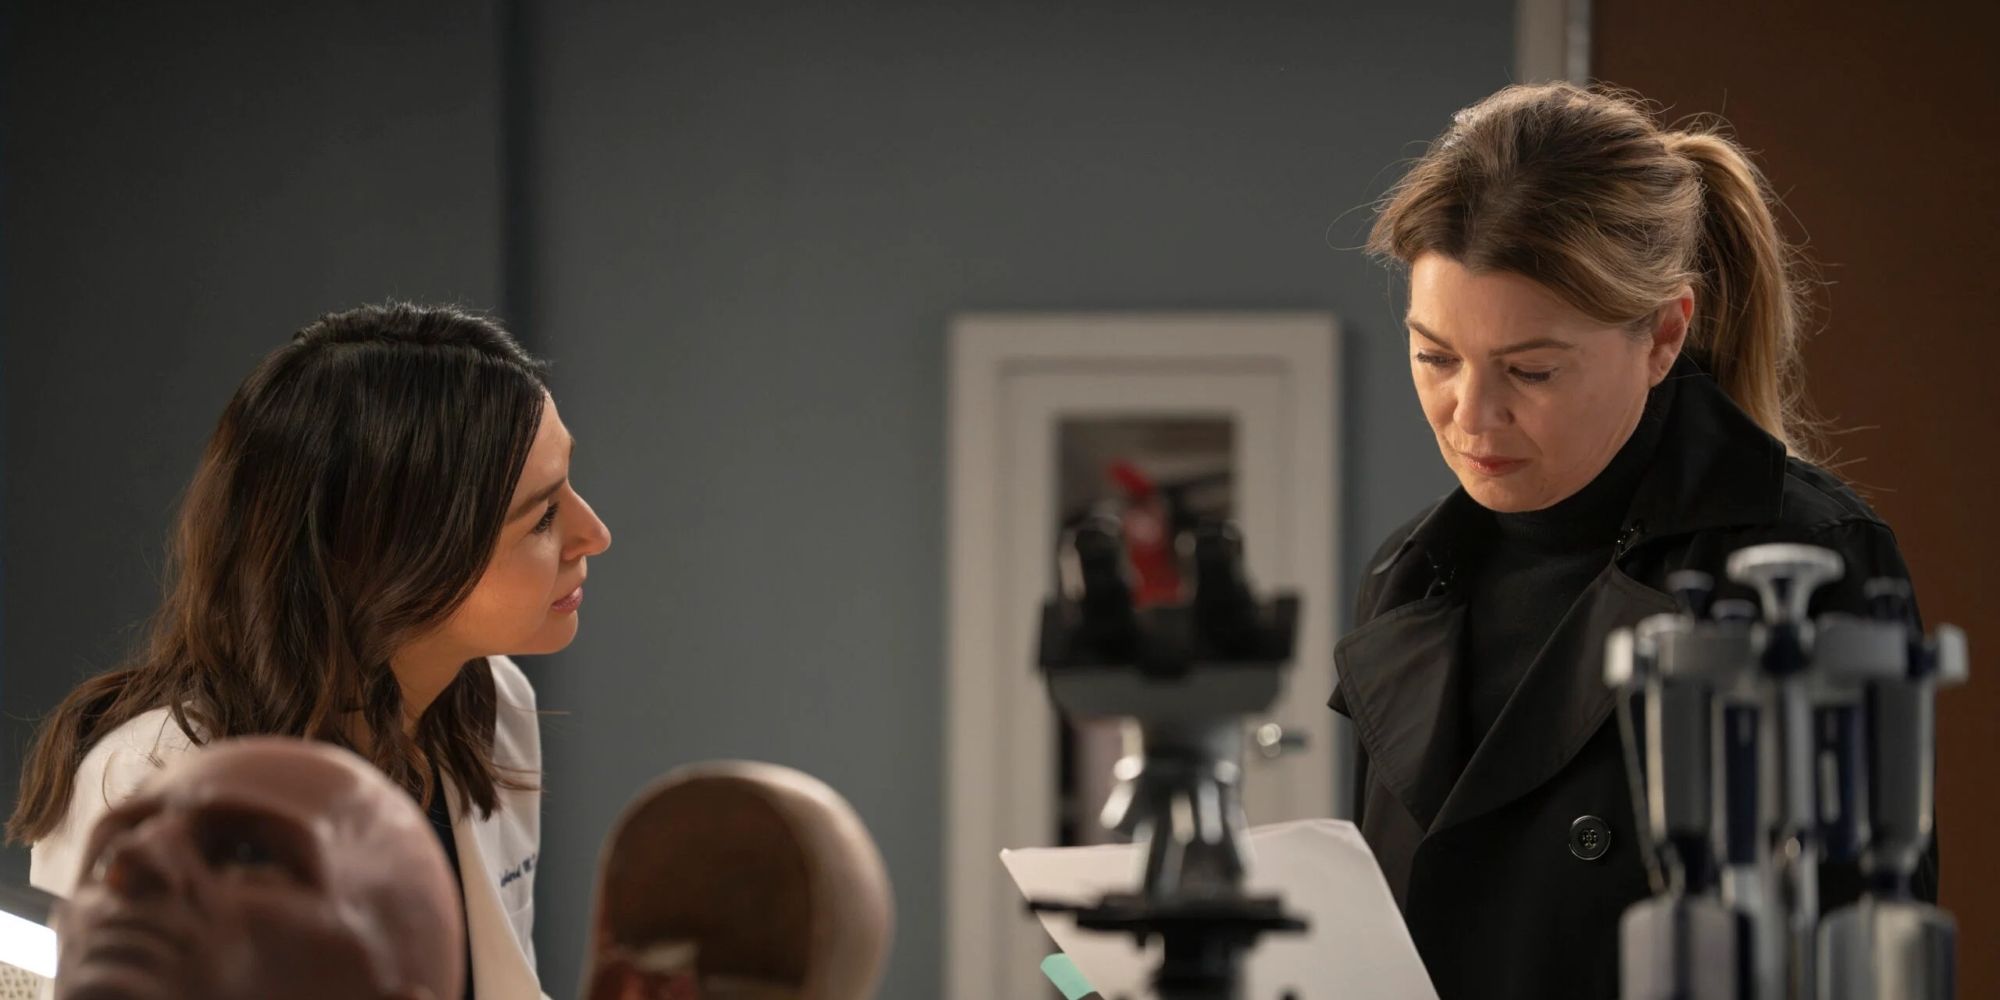 Amelia Shepherd & Meredith Grey Looking At Research In Grey's Anatomy.jpg